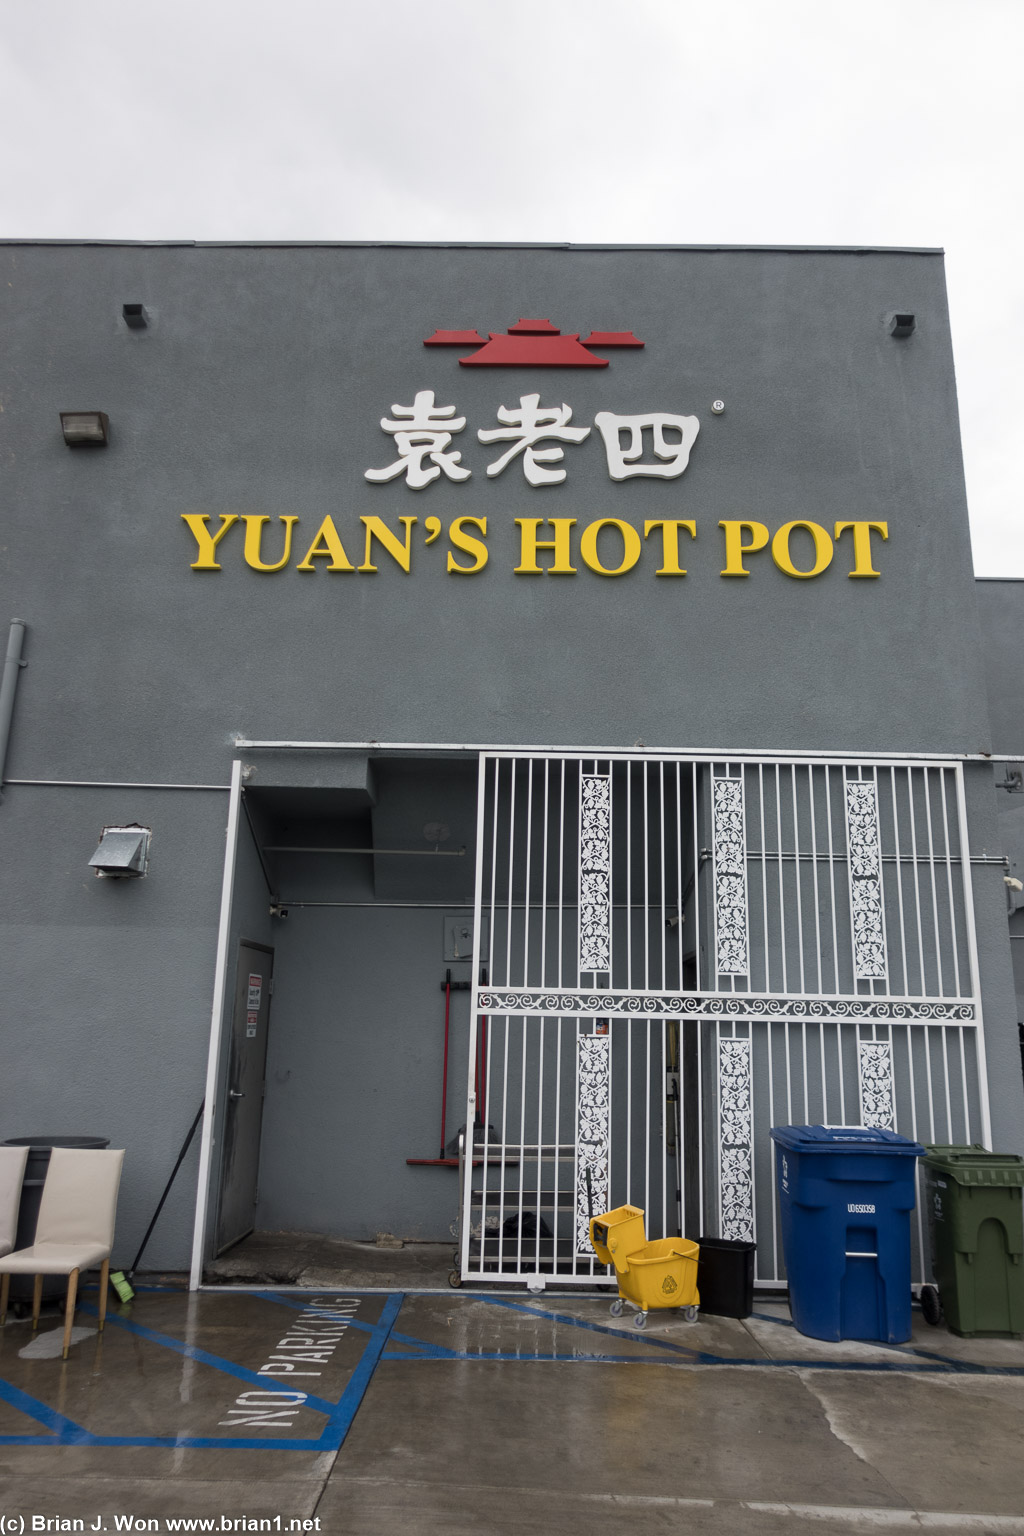 Yuan's Hot Pot.